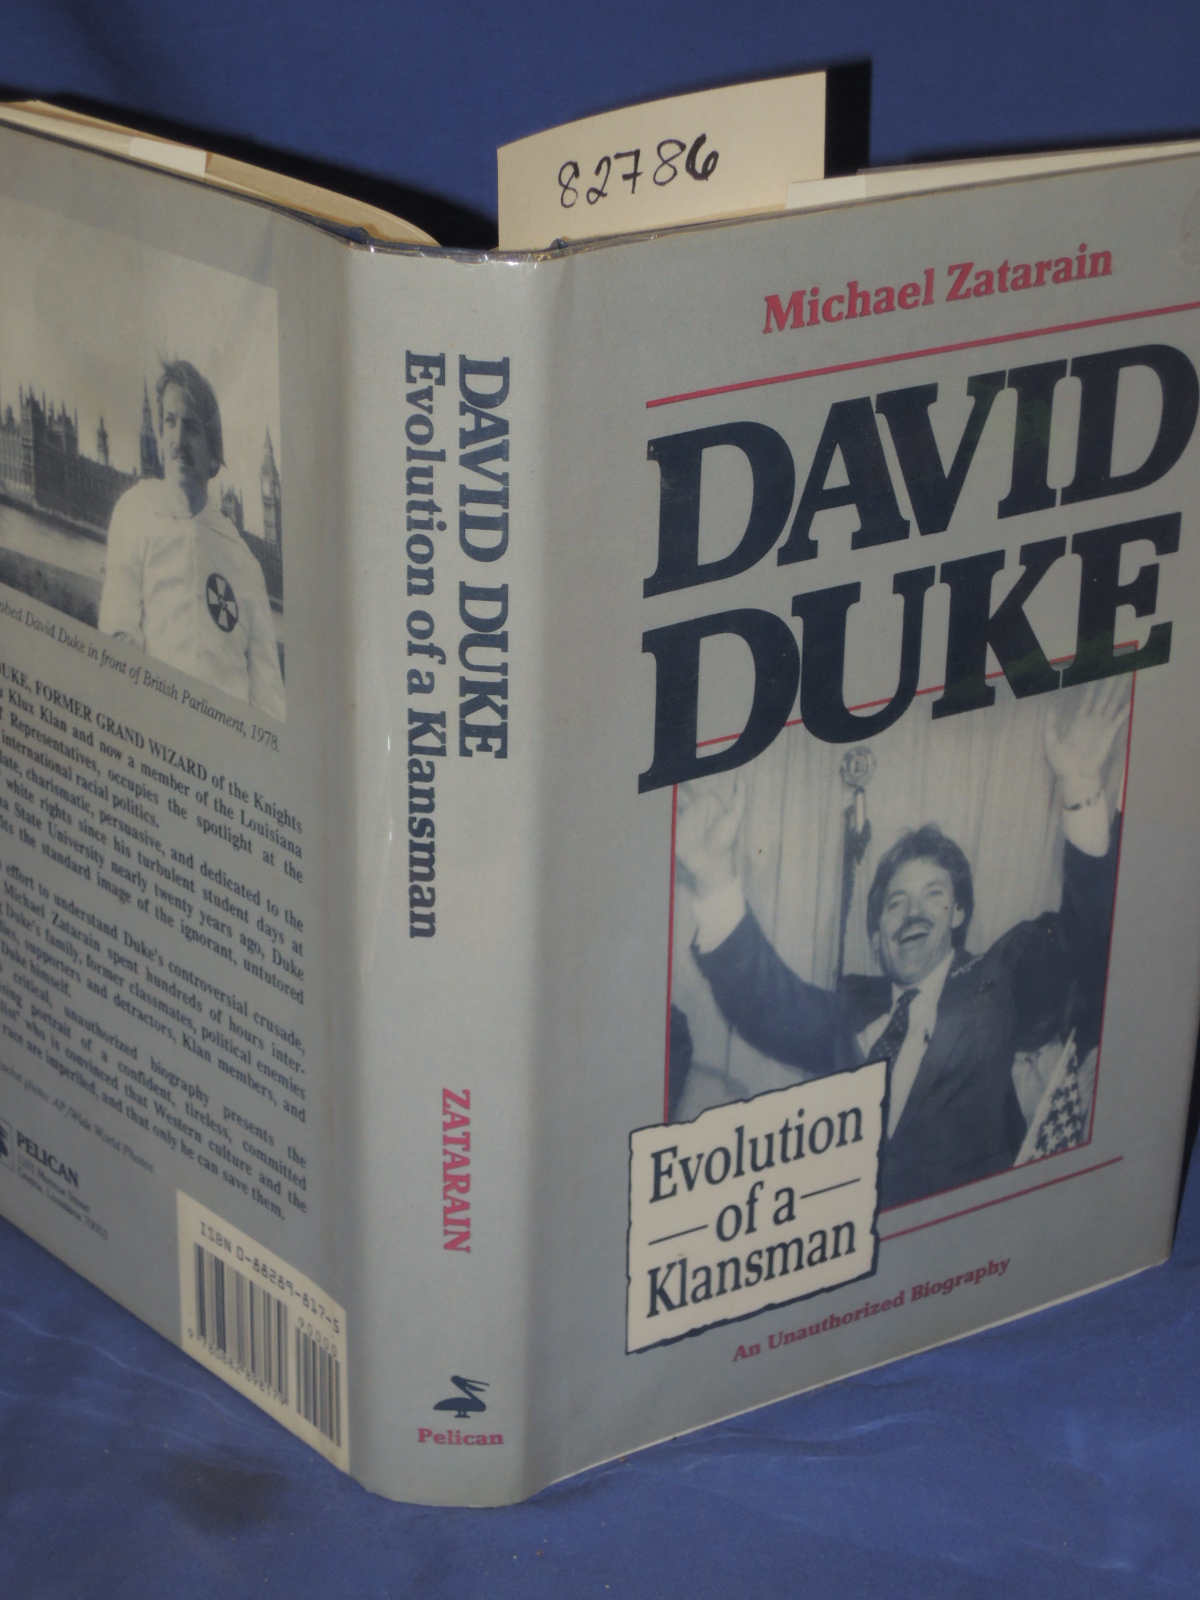 Zatarain, Michael: David Duke - Evolution of a Klansman